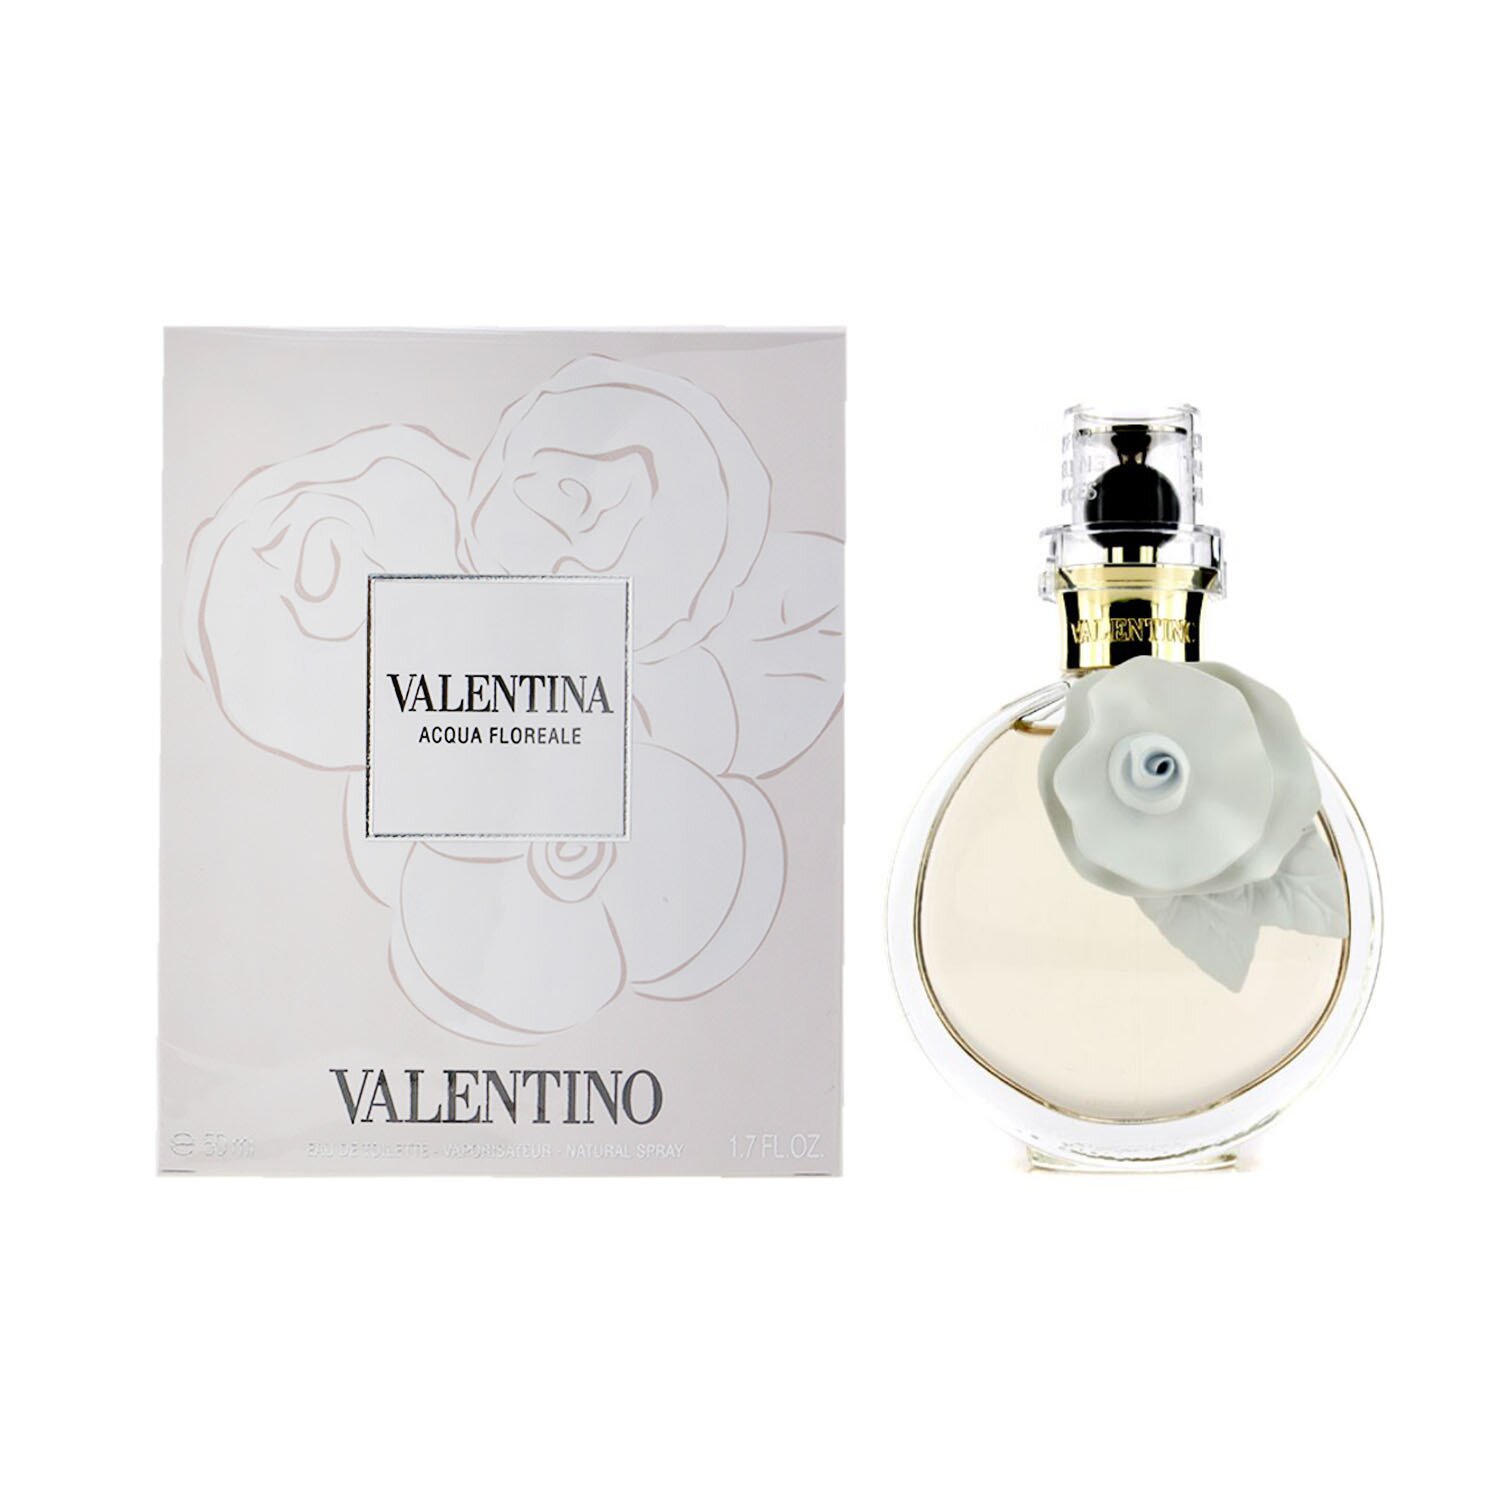 Valentino Valentina Acqua Floreale Eau De Toilette Spray 50ml/1.7oz